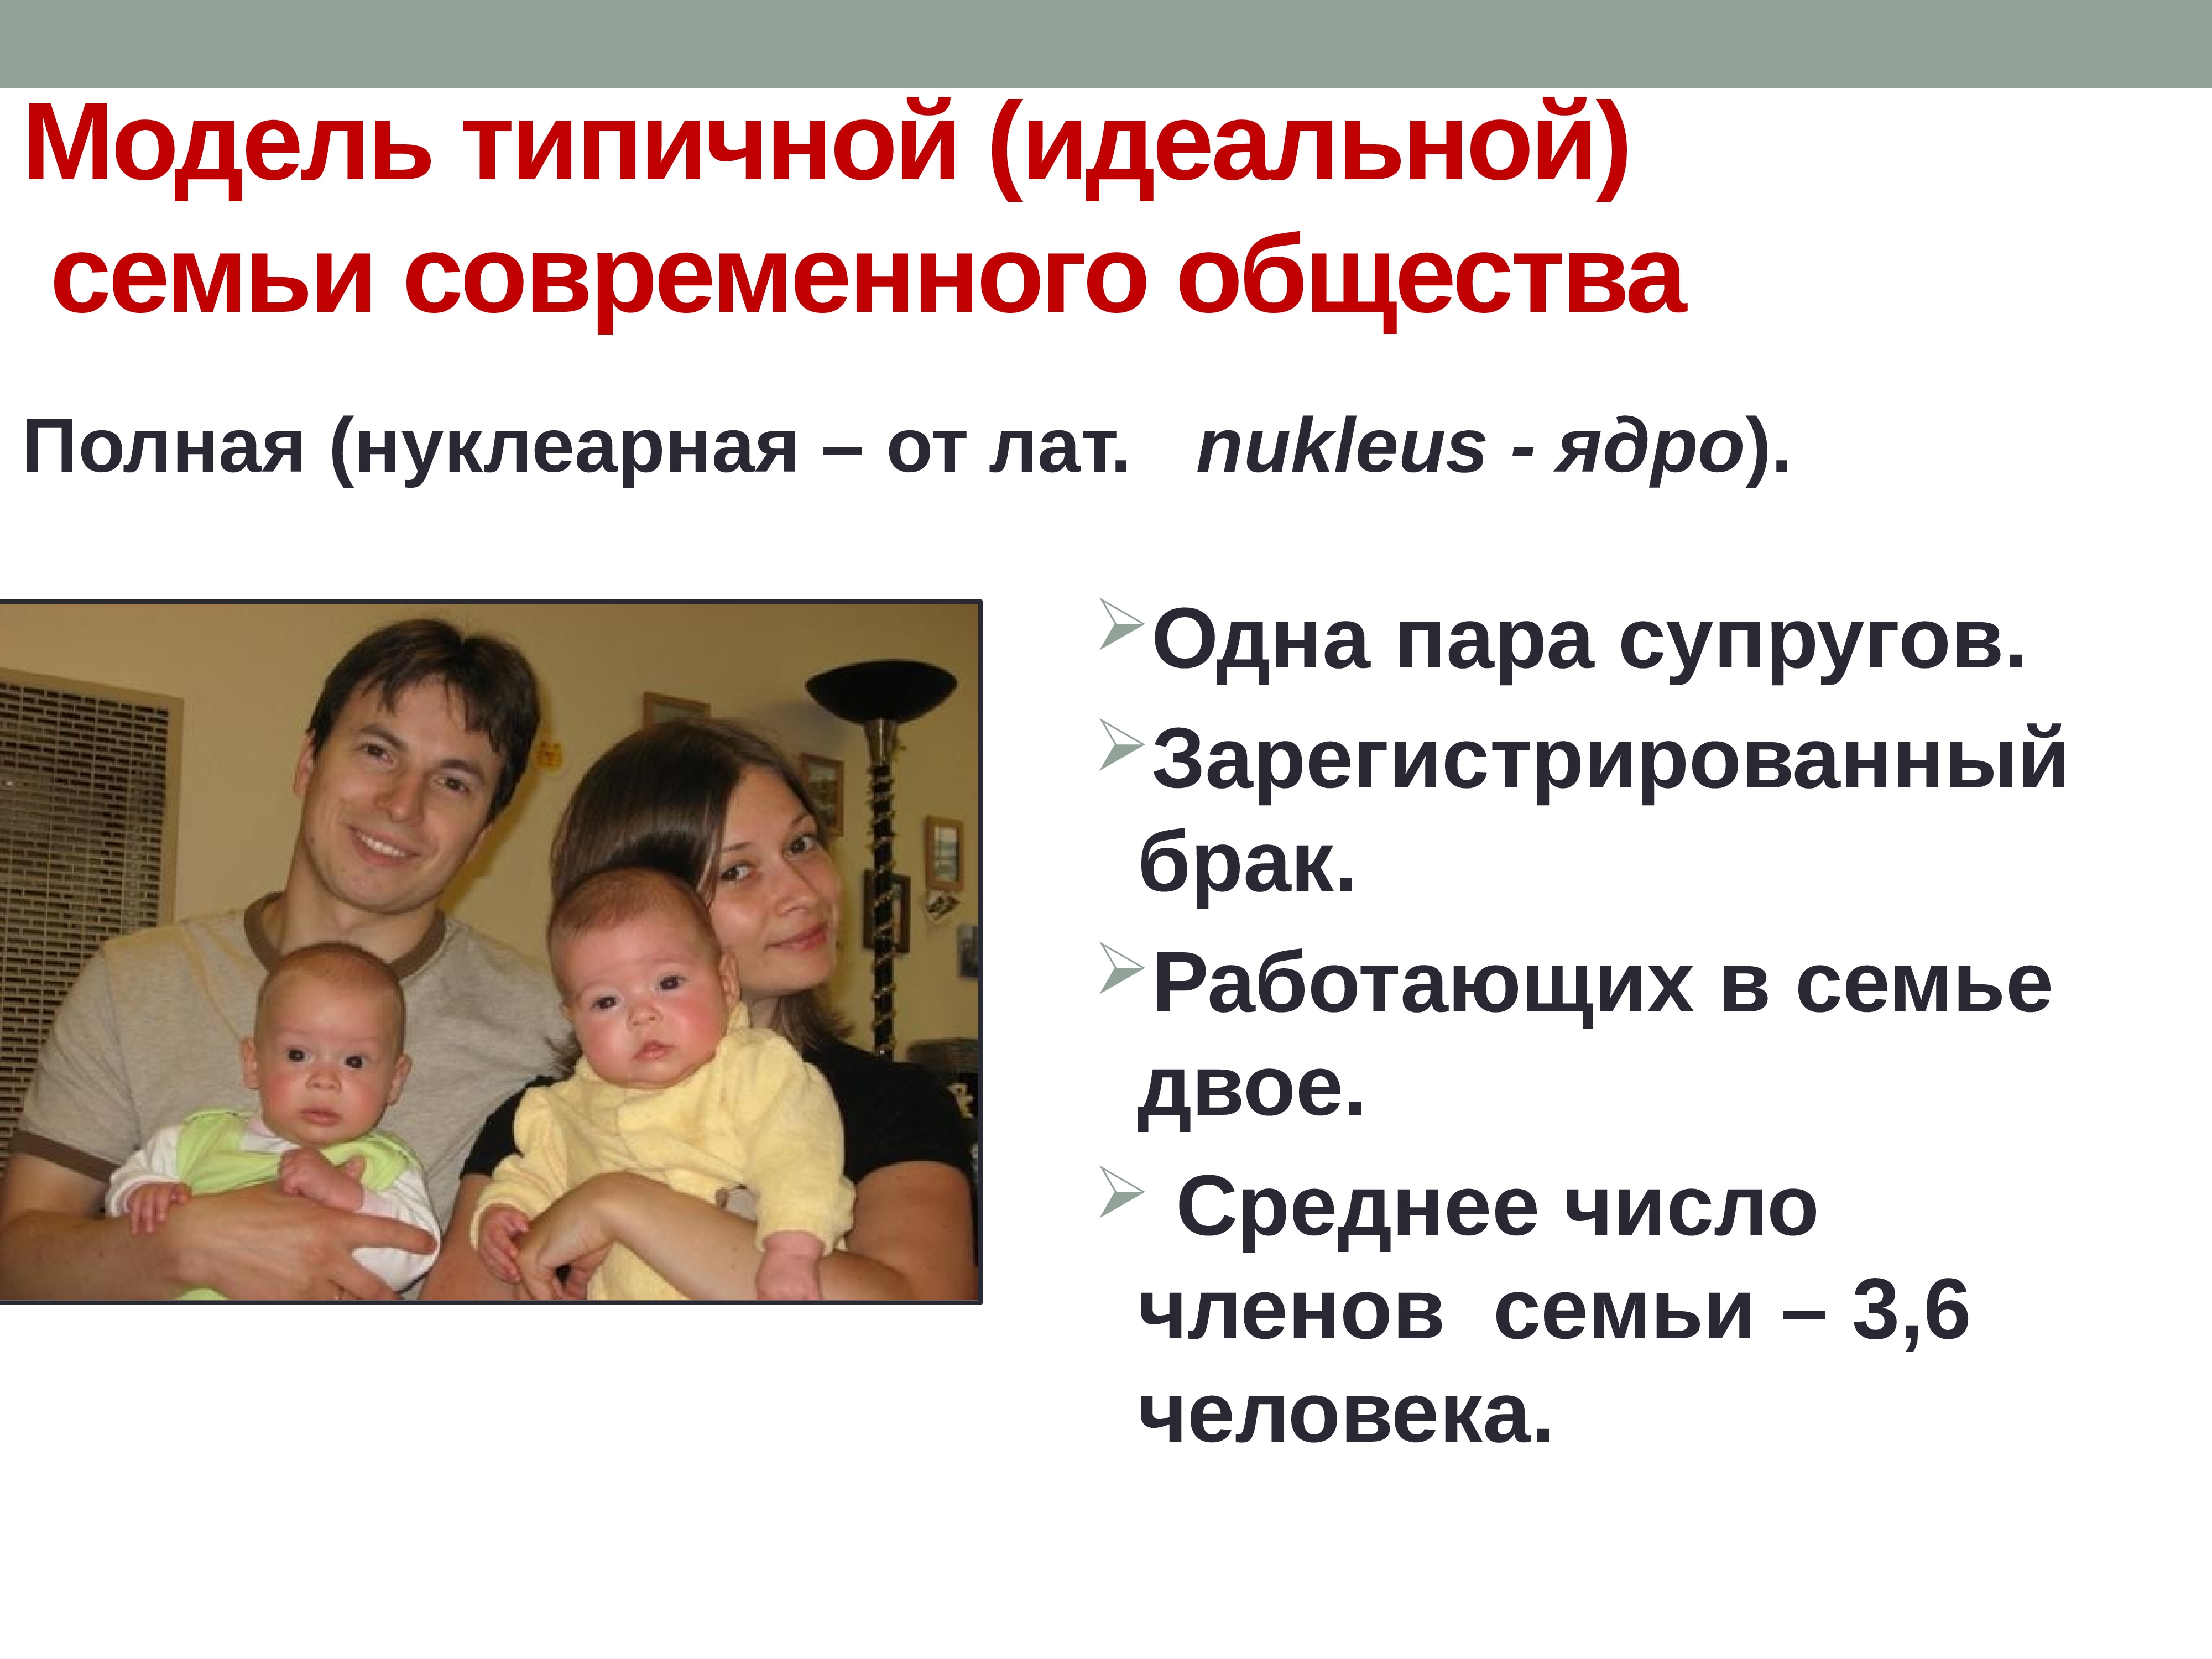 Назвать черты семьи. Модель современной семьи. Типичная модель семьи. Макет идеальной семьи. Модель современной идеальной семьи.